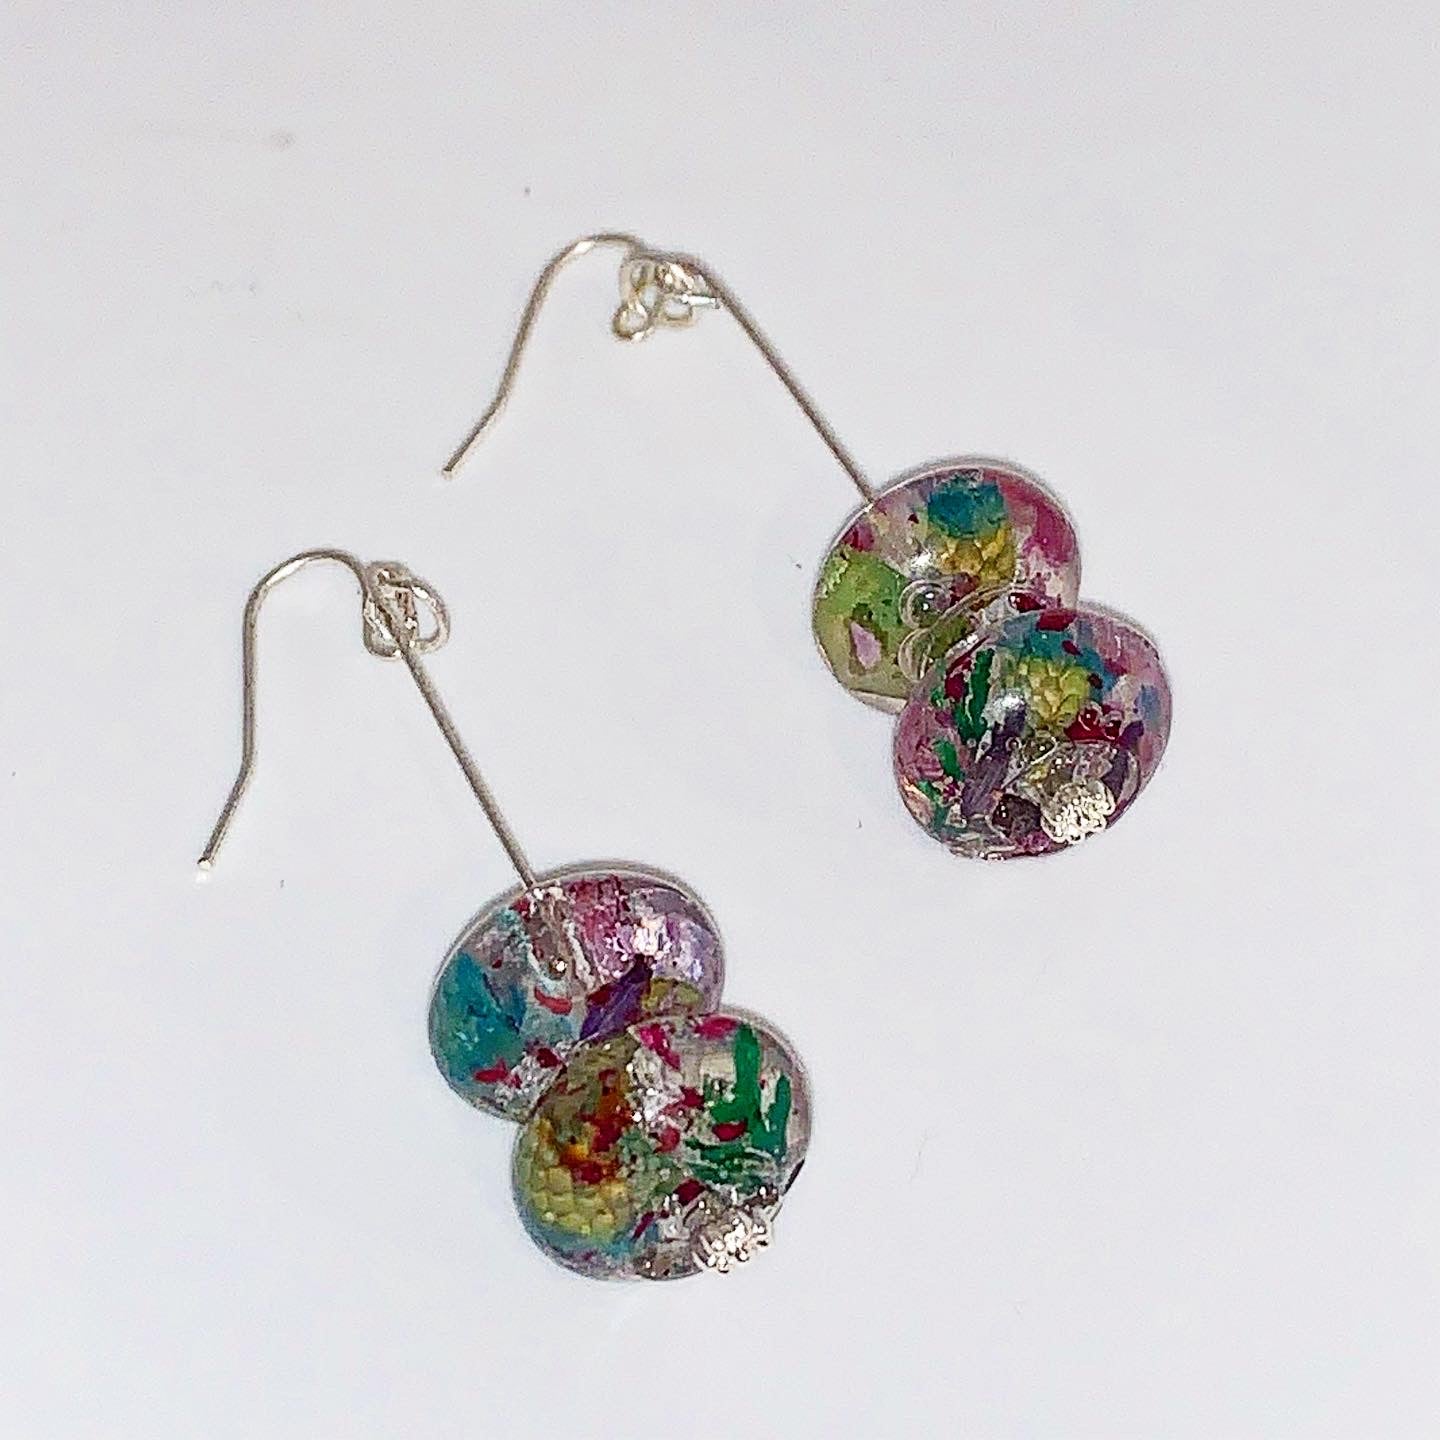 Handmade Bead Earrings with Wildflowers